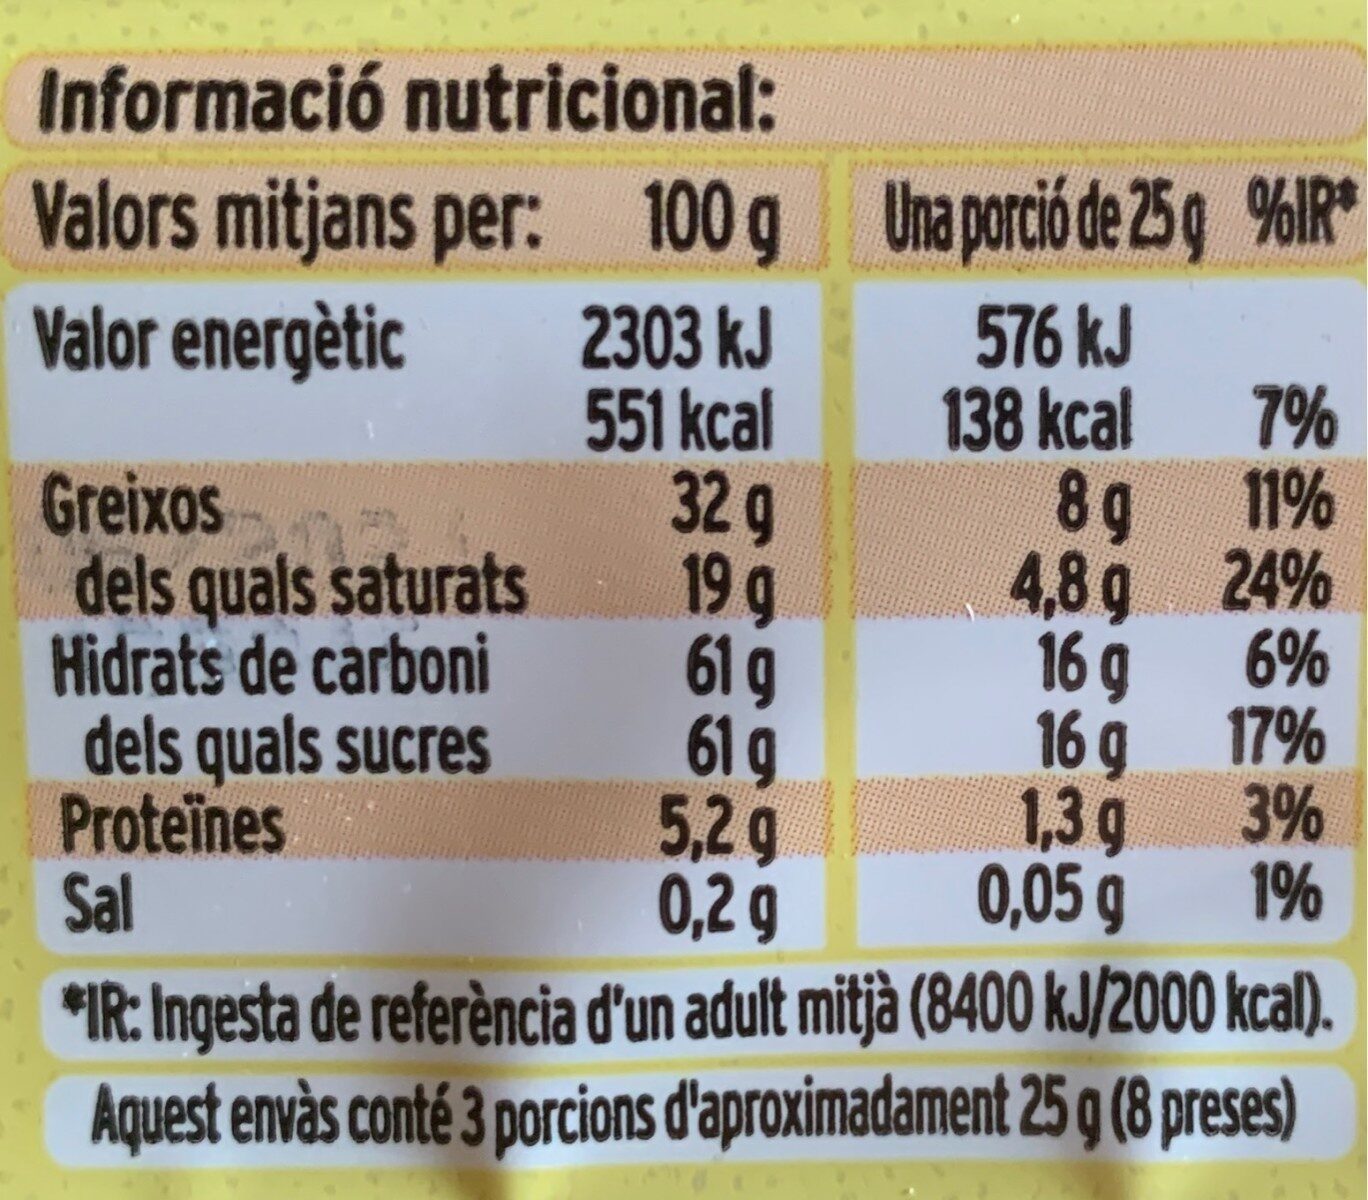 Xocolata blanca - Informació nutricional - es